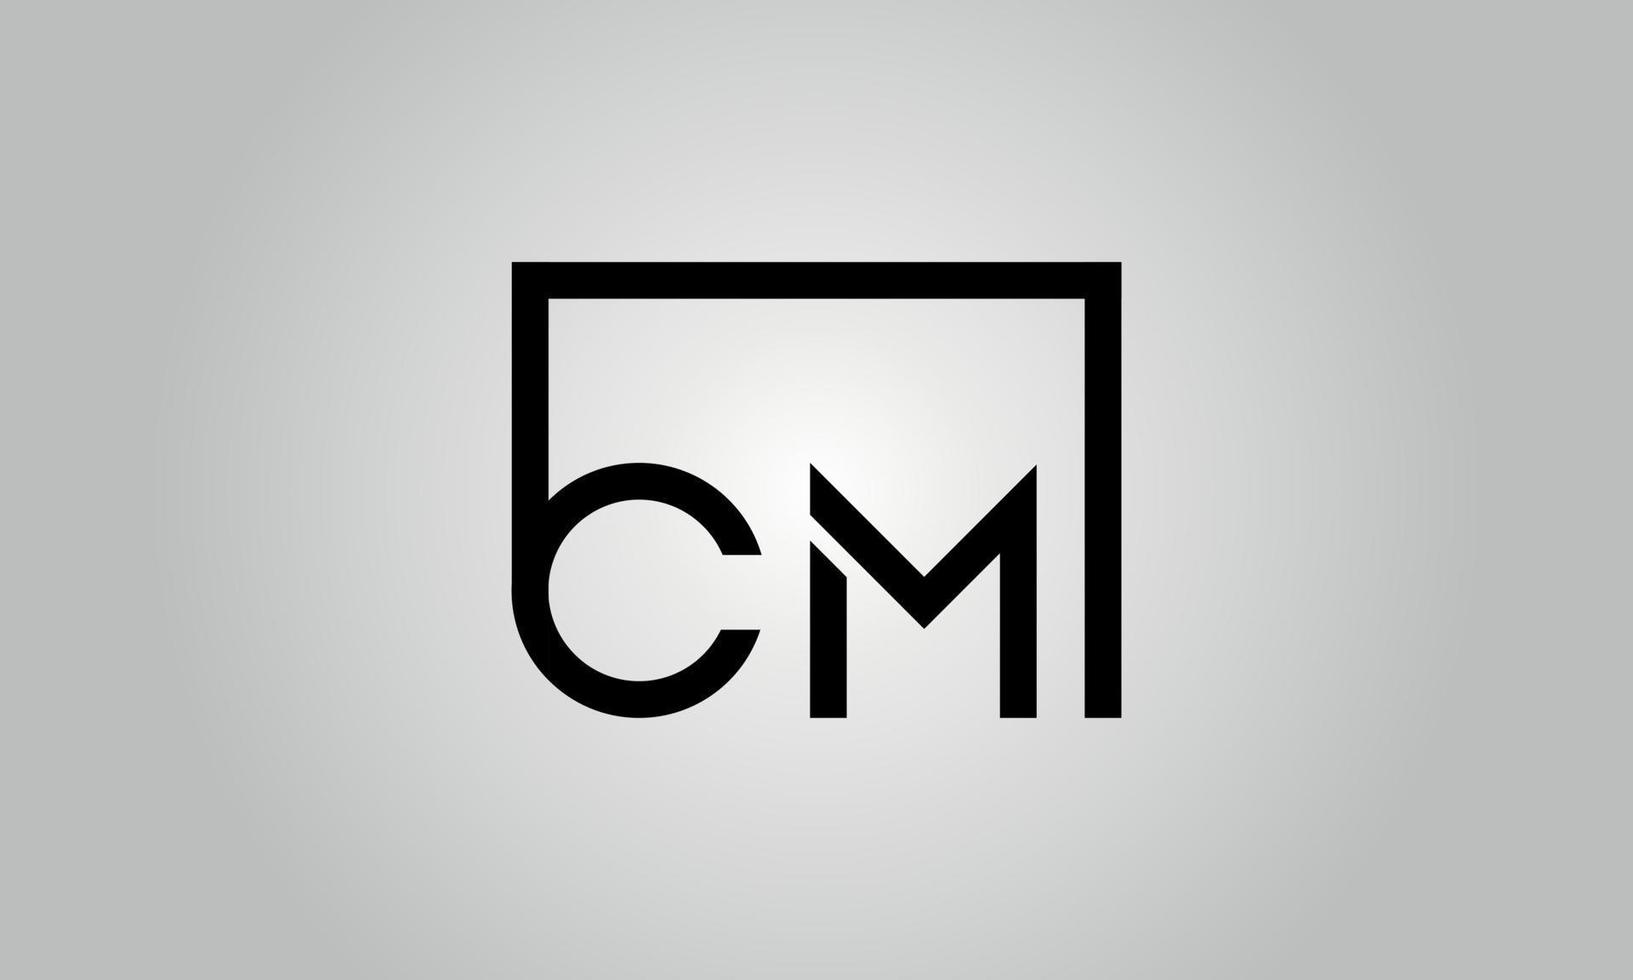 design de logotipo de letra cm. cm logotipo com forma quadrada em cores pretas modelo de vetor livre.